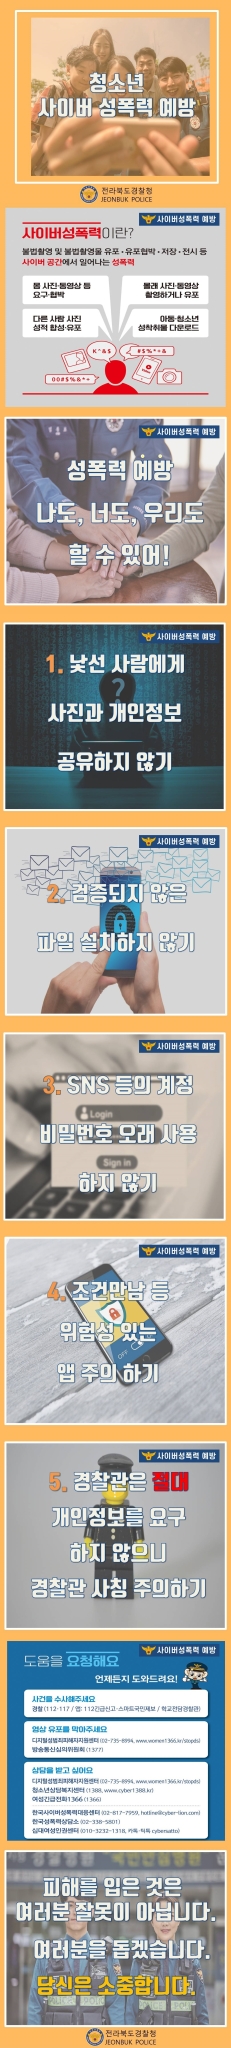 부안경찰서 생활안전과_청소년 사이버 성폭력 예방 카드뉴스 게시용